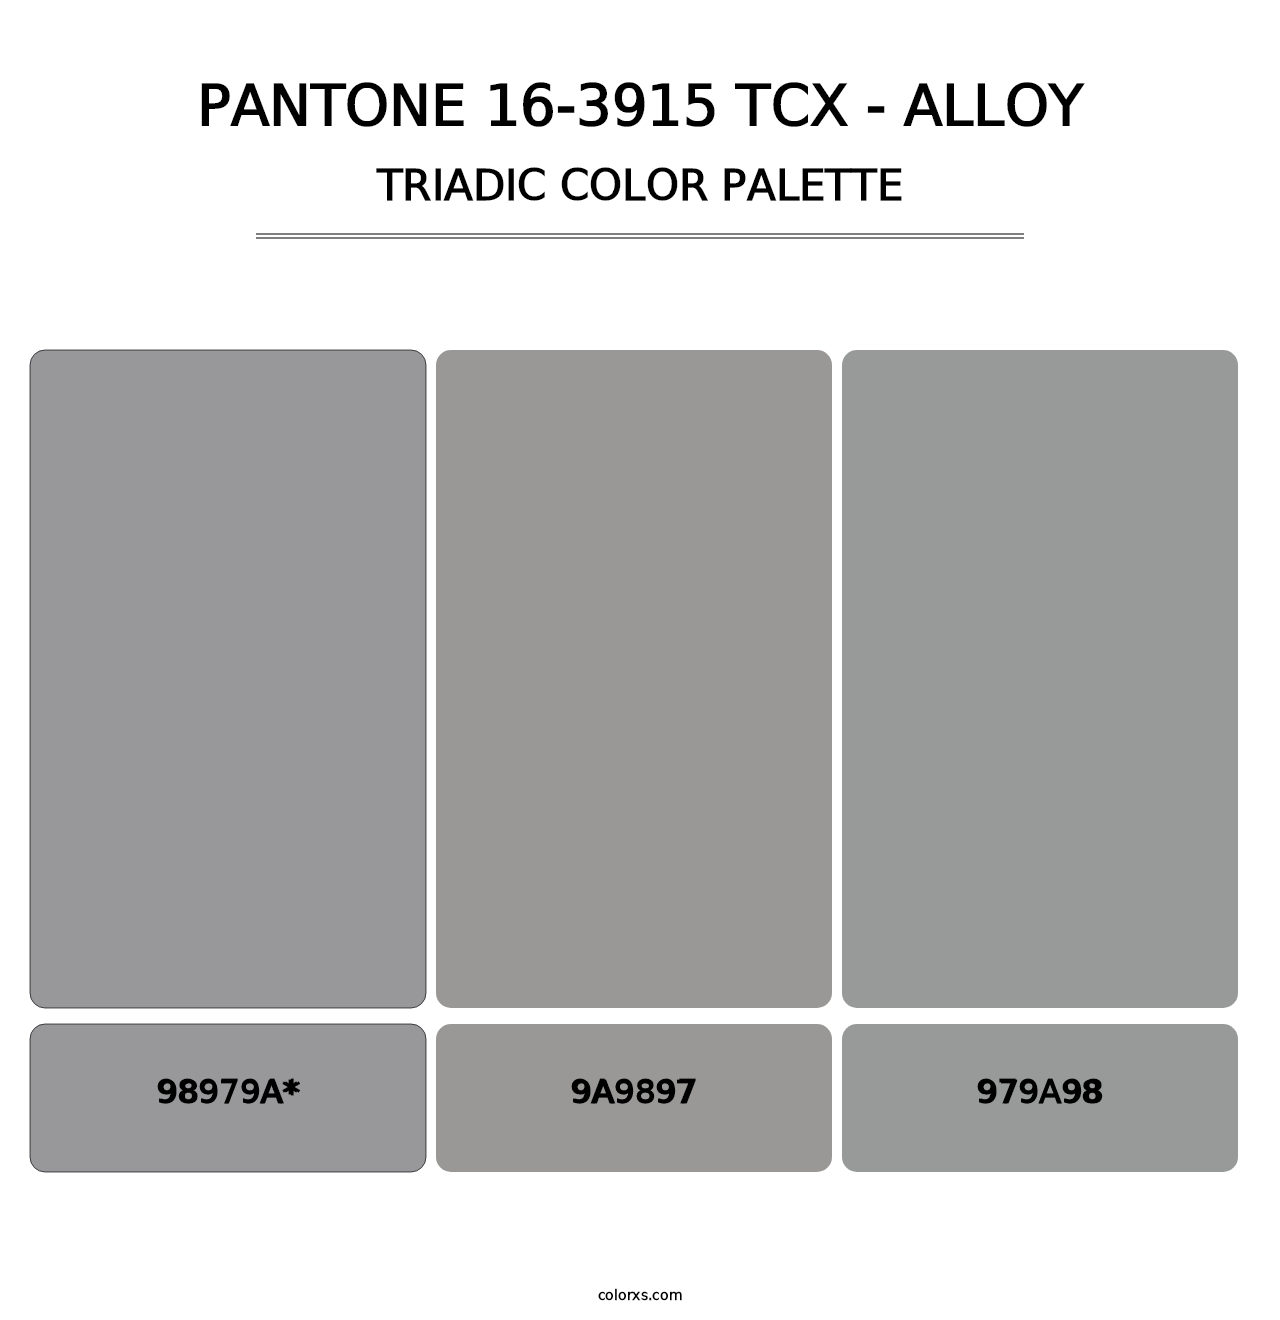 PANTONE 16-3915 TCX - Alloy - Triadic Color Palette